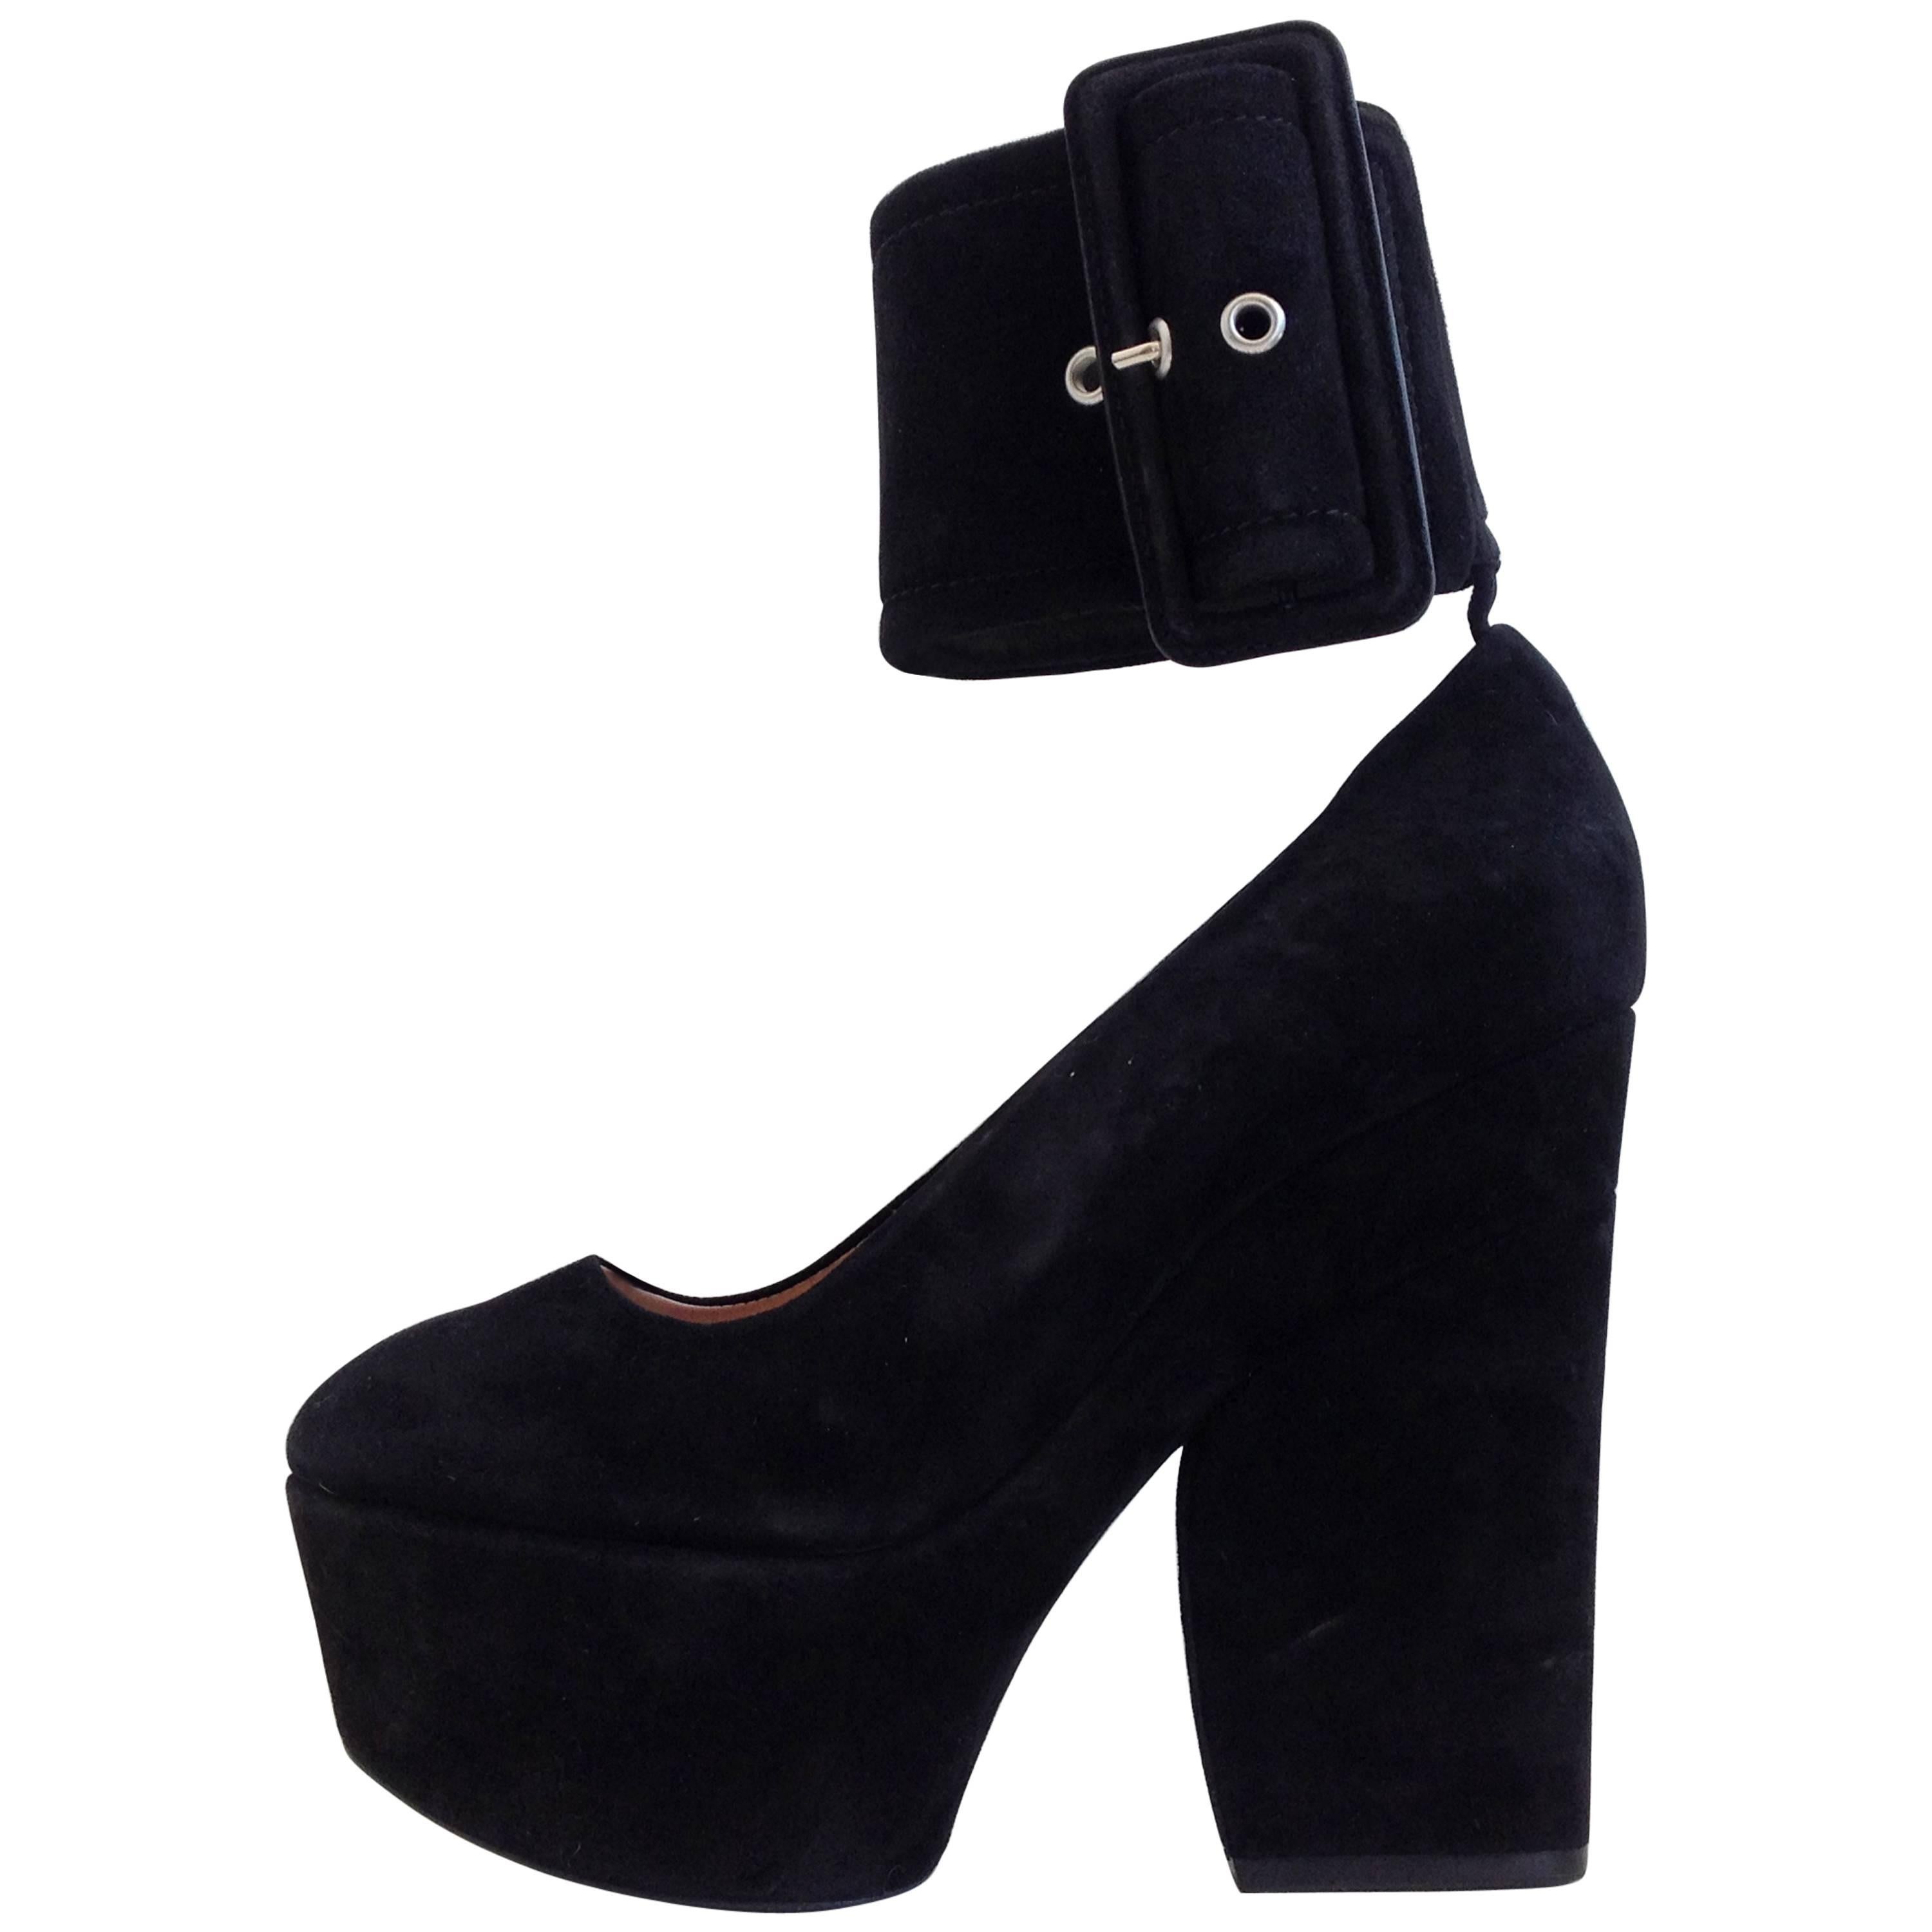 Celine Black Suede Platform Heels with Ankle Strap Size 37 (6.5) For Sale